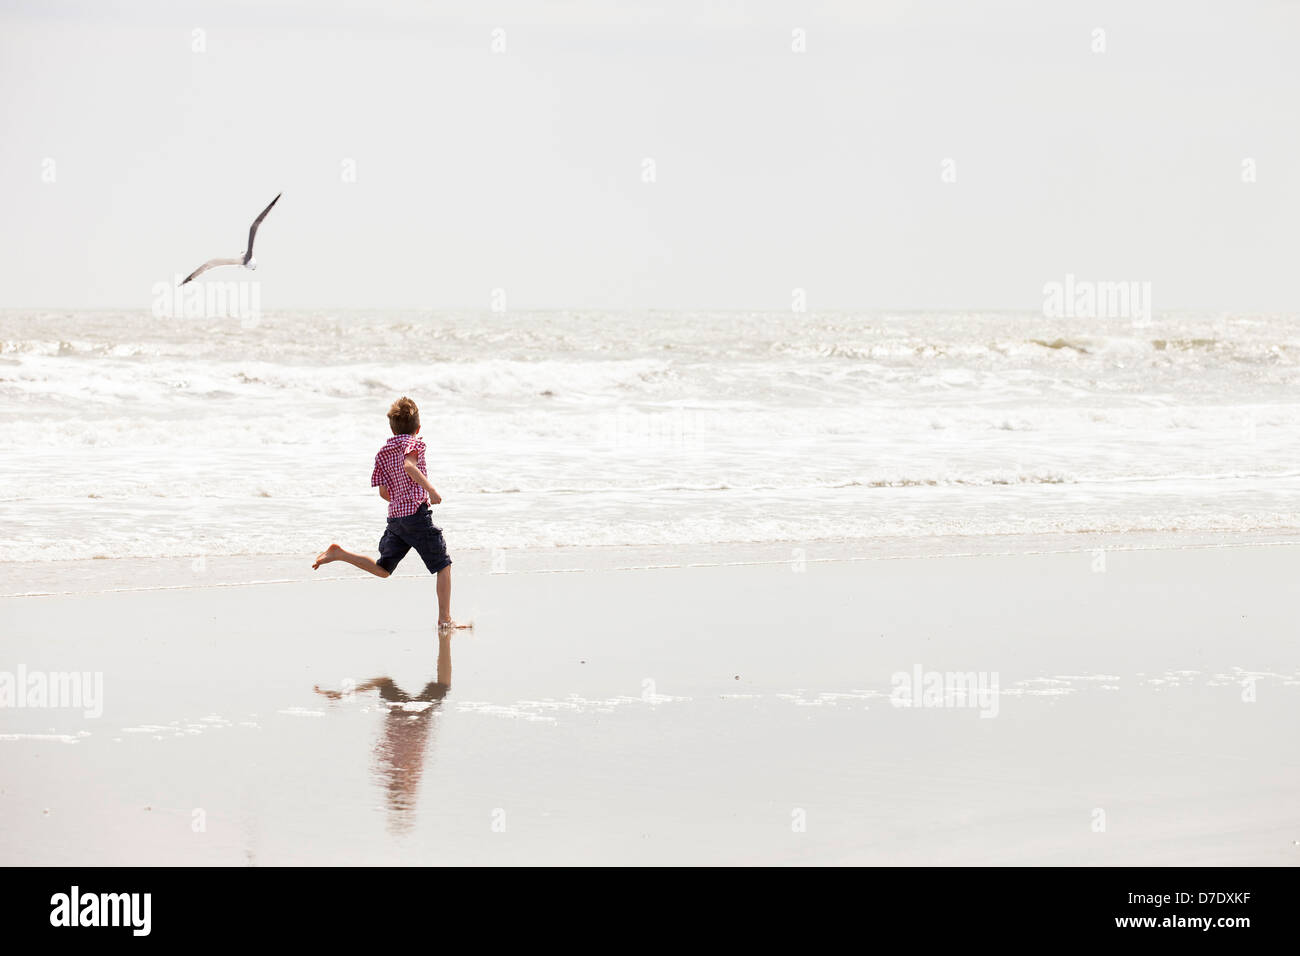 boy running on beach Stock Photo